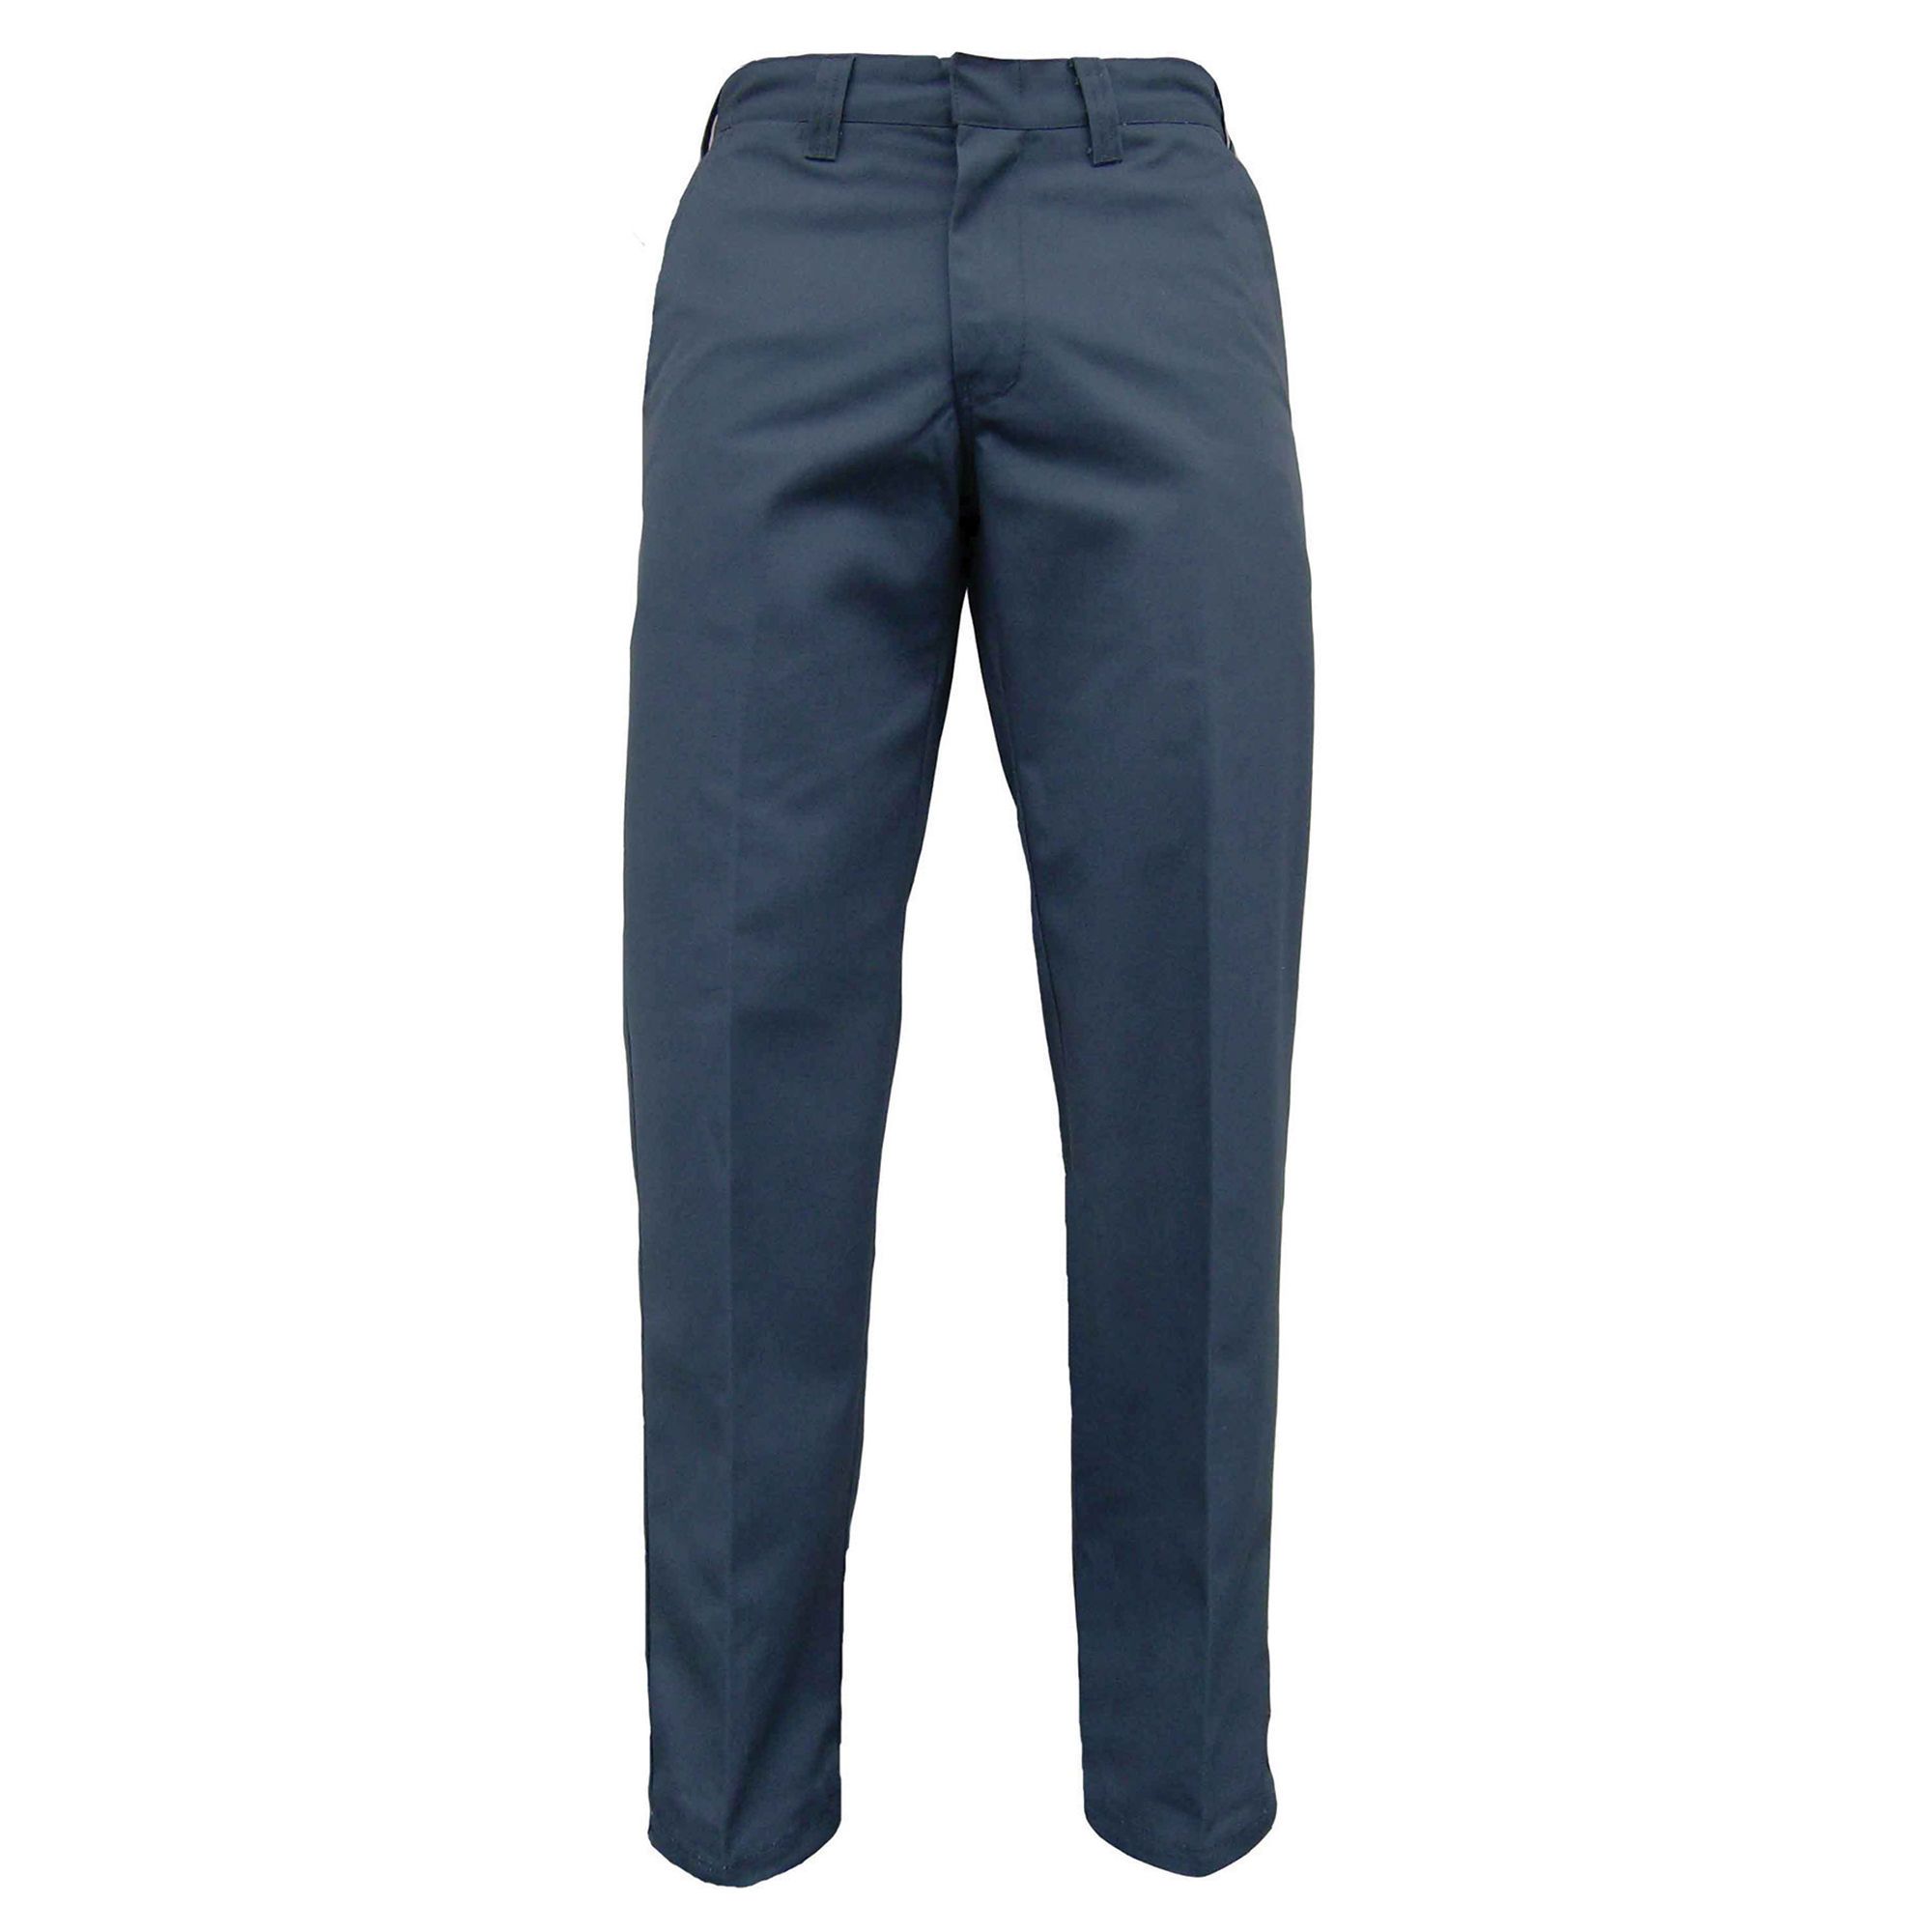 Fleece Lined Pants - Blue - Size 32/32 from JACKFIELD